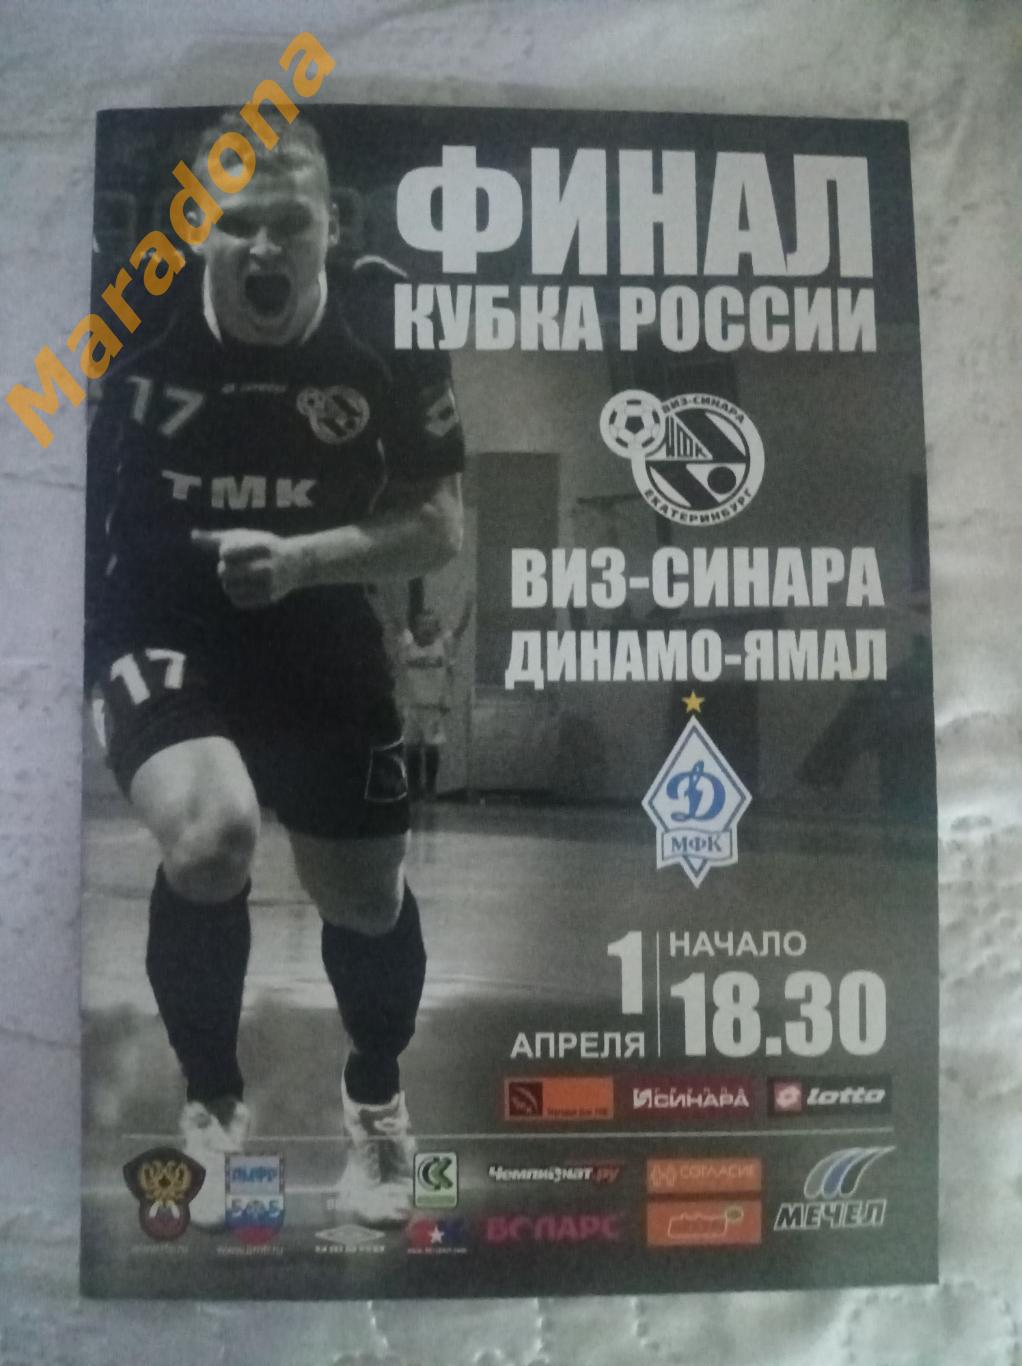 Синара Екатеринбург - Динамо-Ямал Москва 2008/2009 Кубок